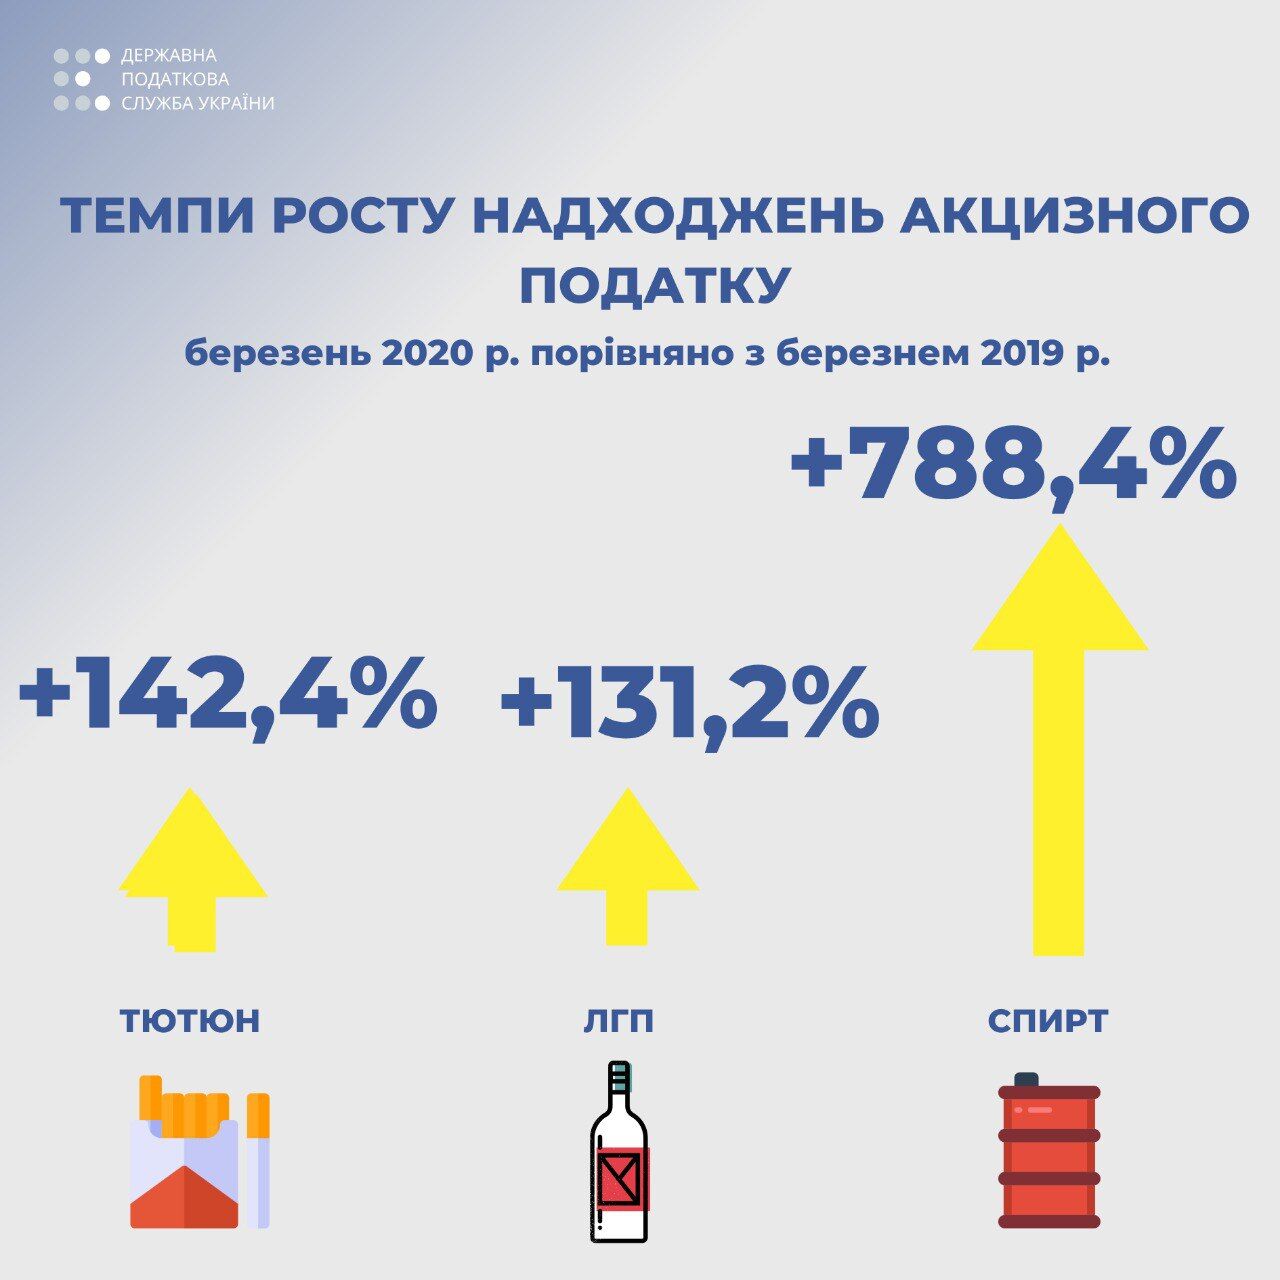 Верланов: Поступления от акцизного налога на спирт выросли почти в 8 раз